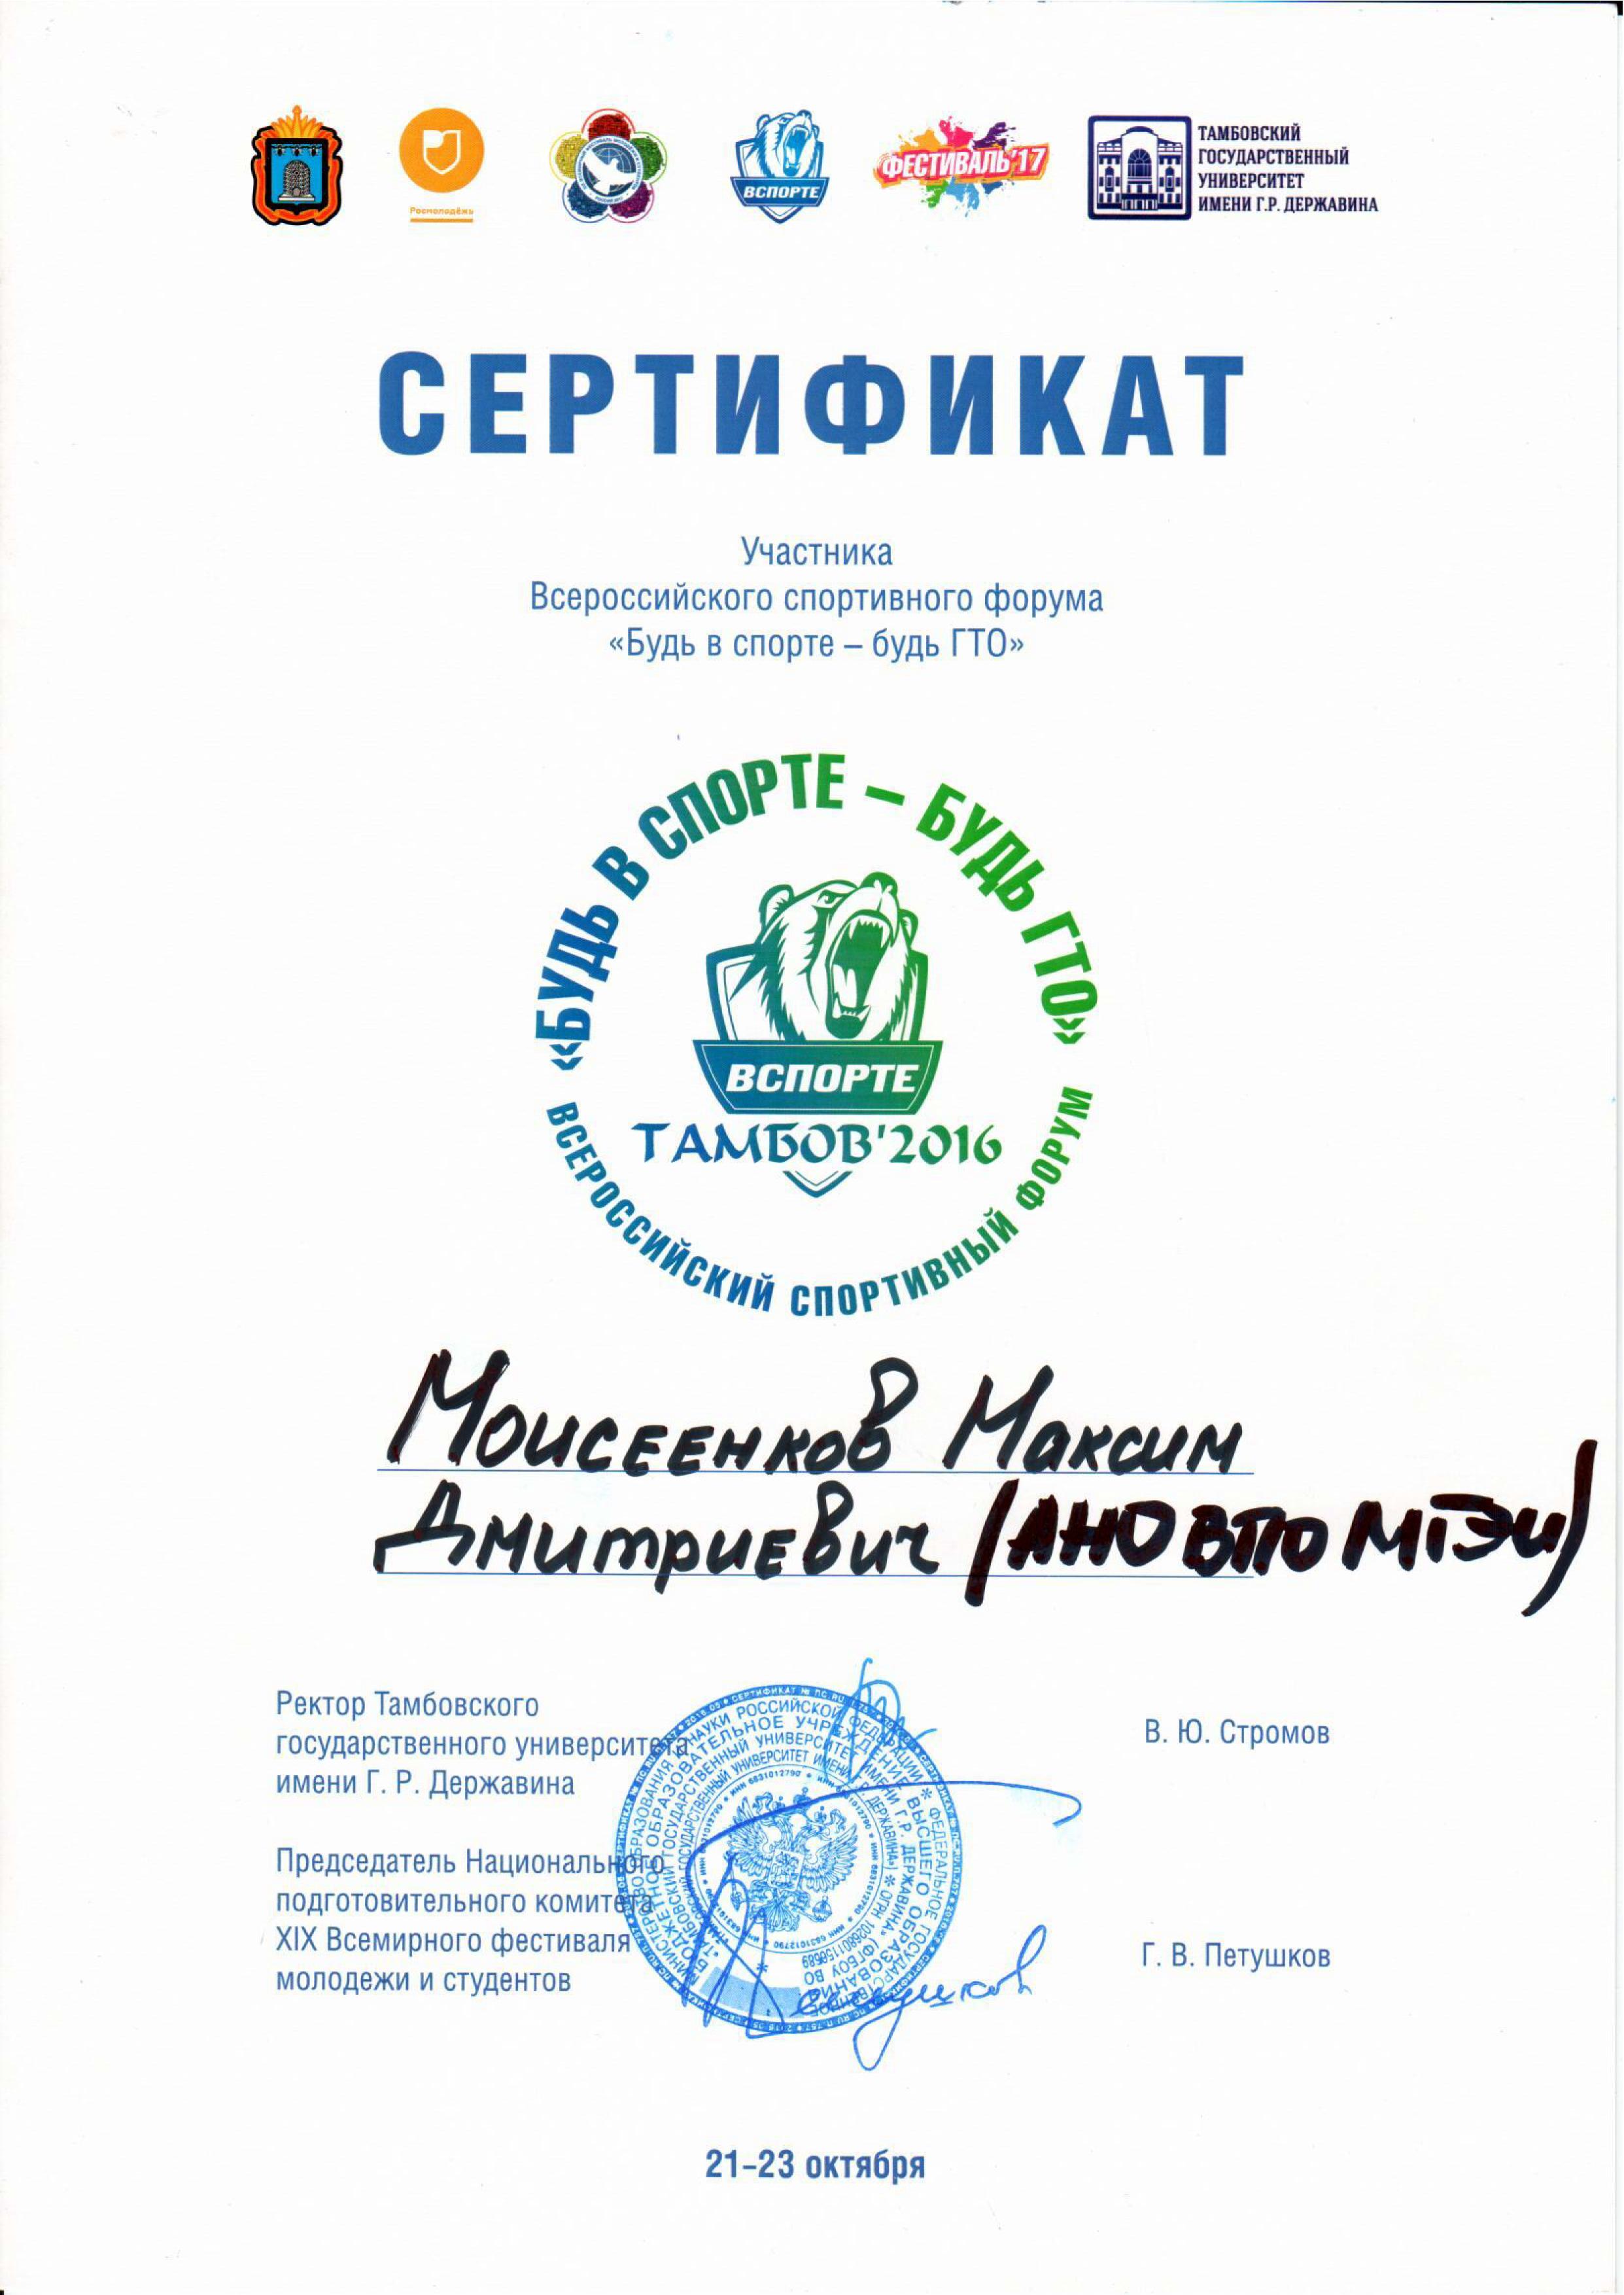 Сертификат участника всероссийского спортивного форума МГЭУ